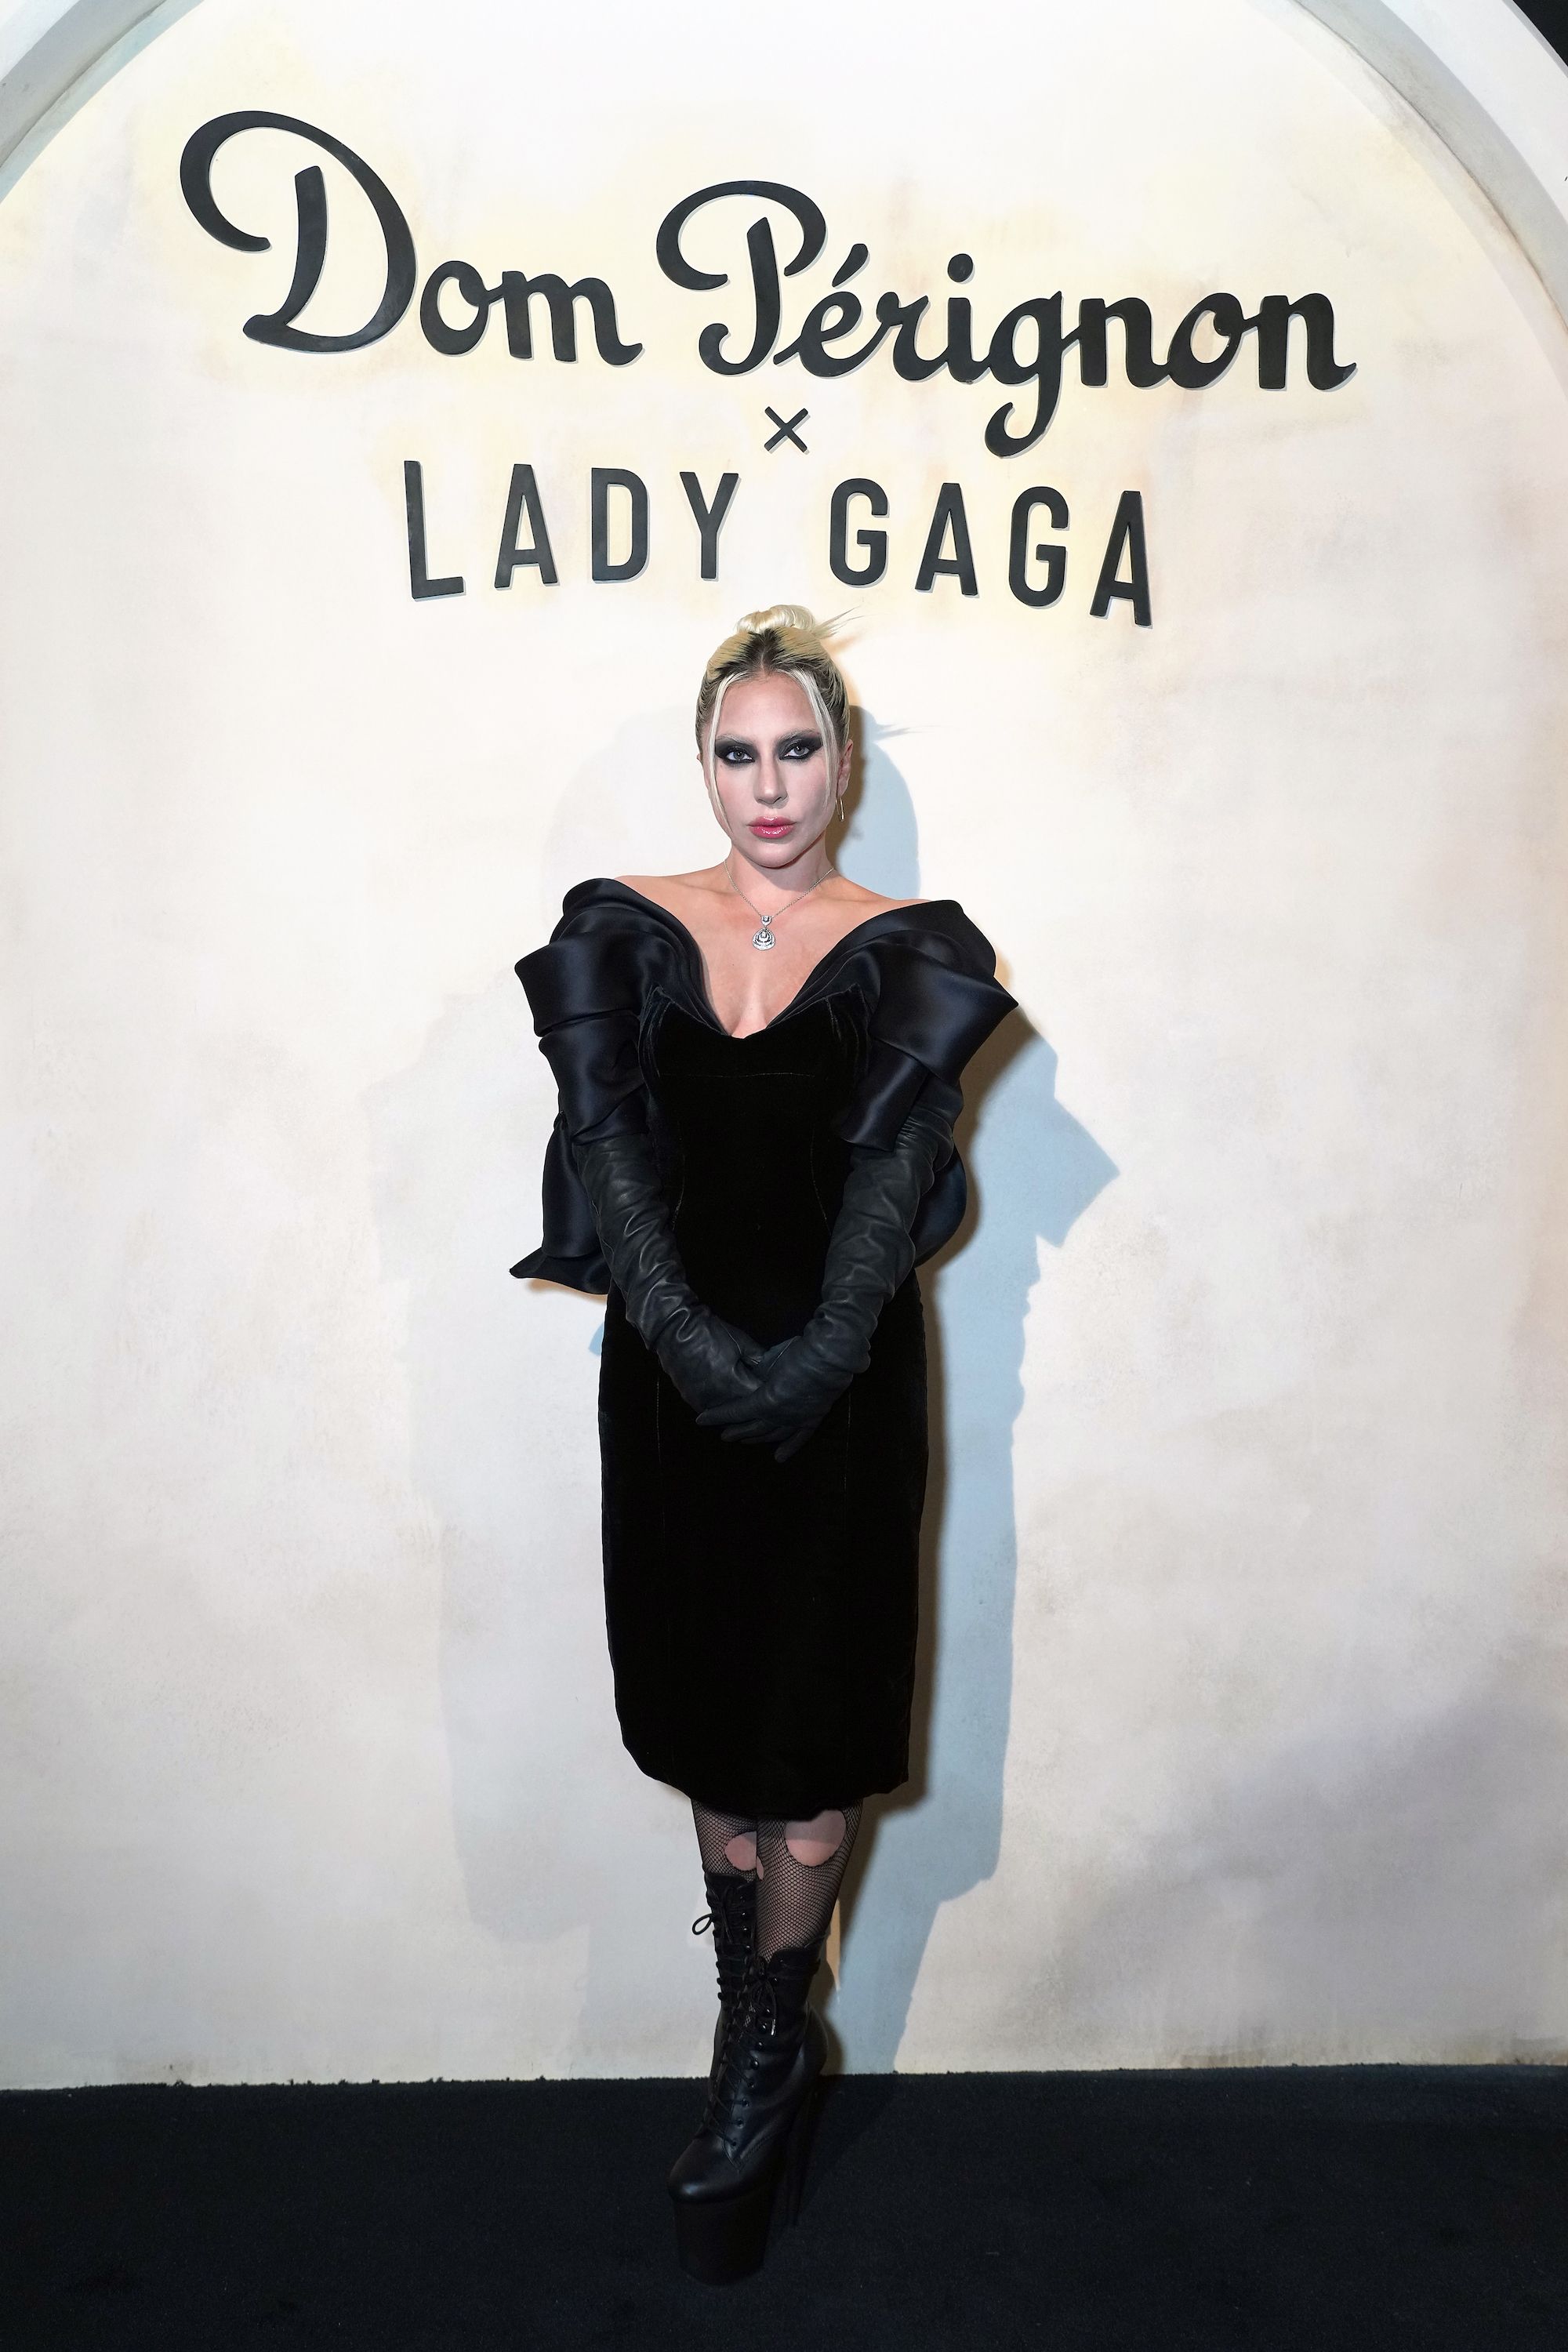 Hyper realistic Lady Gaga as a Goth Metal artist rea